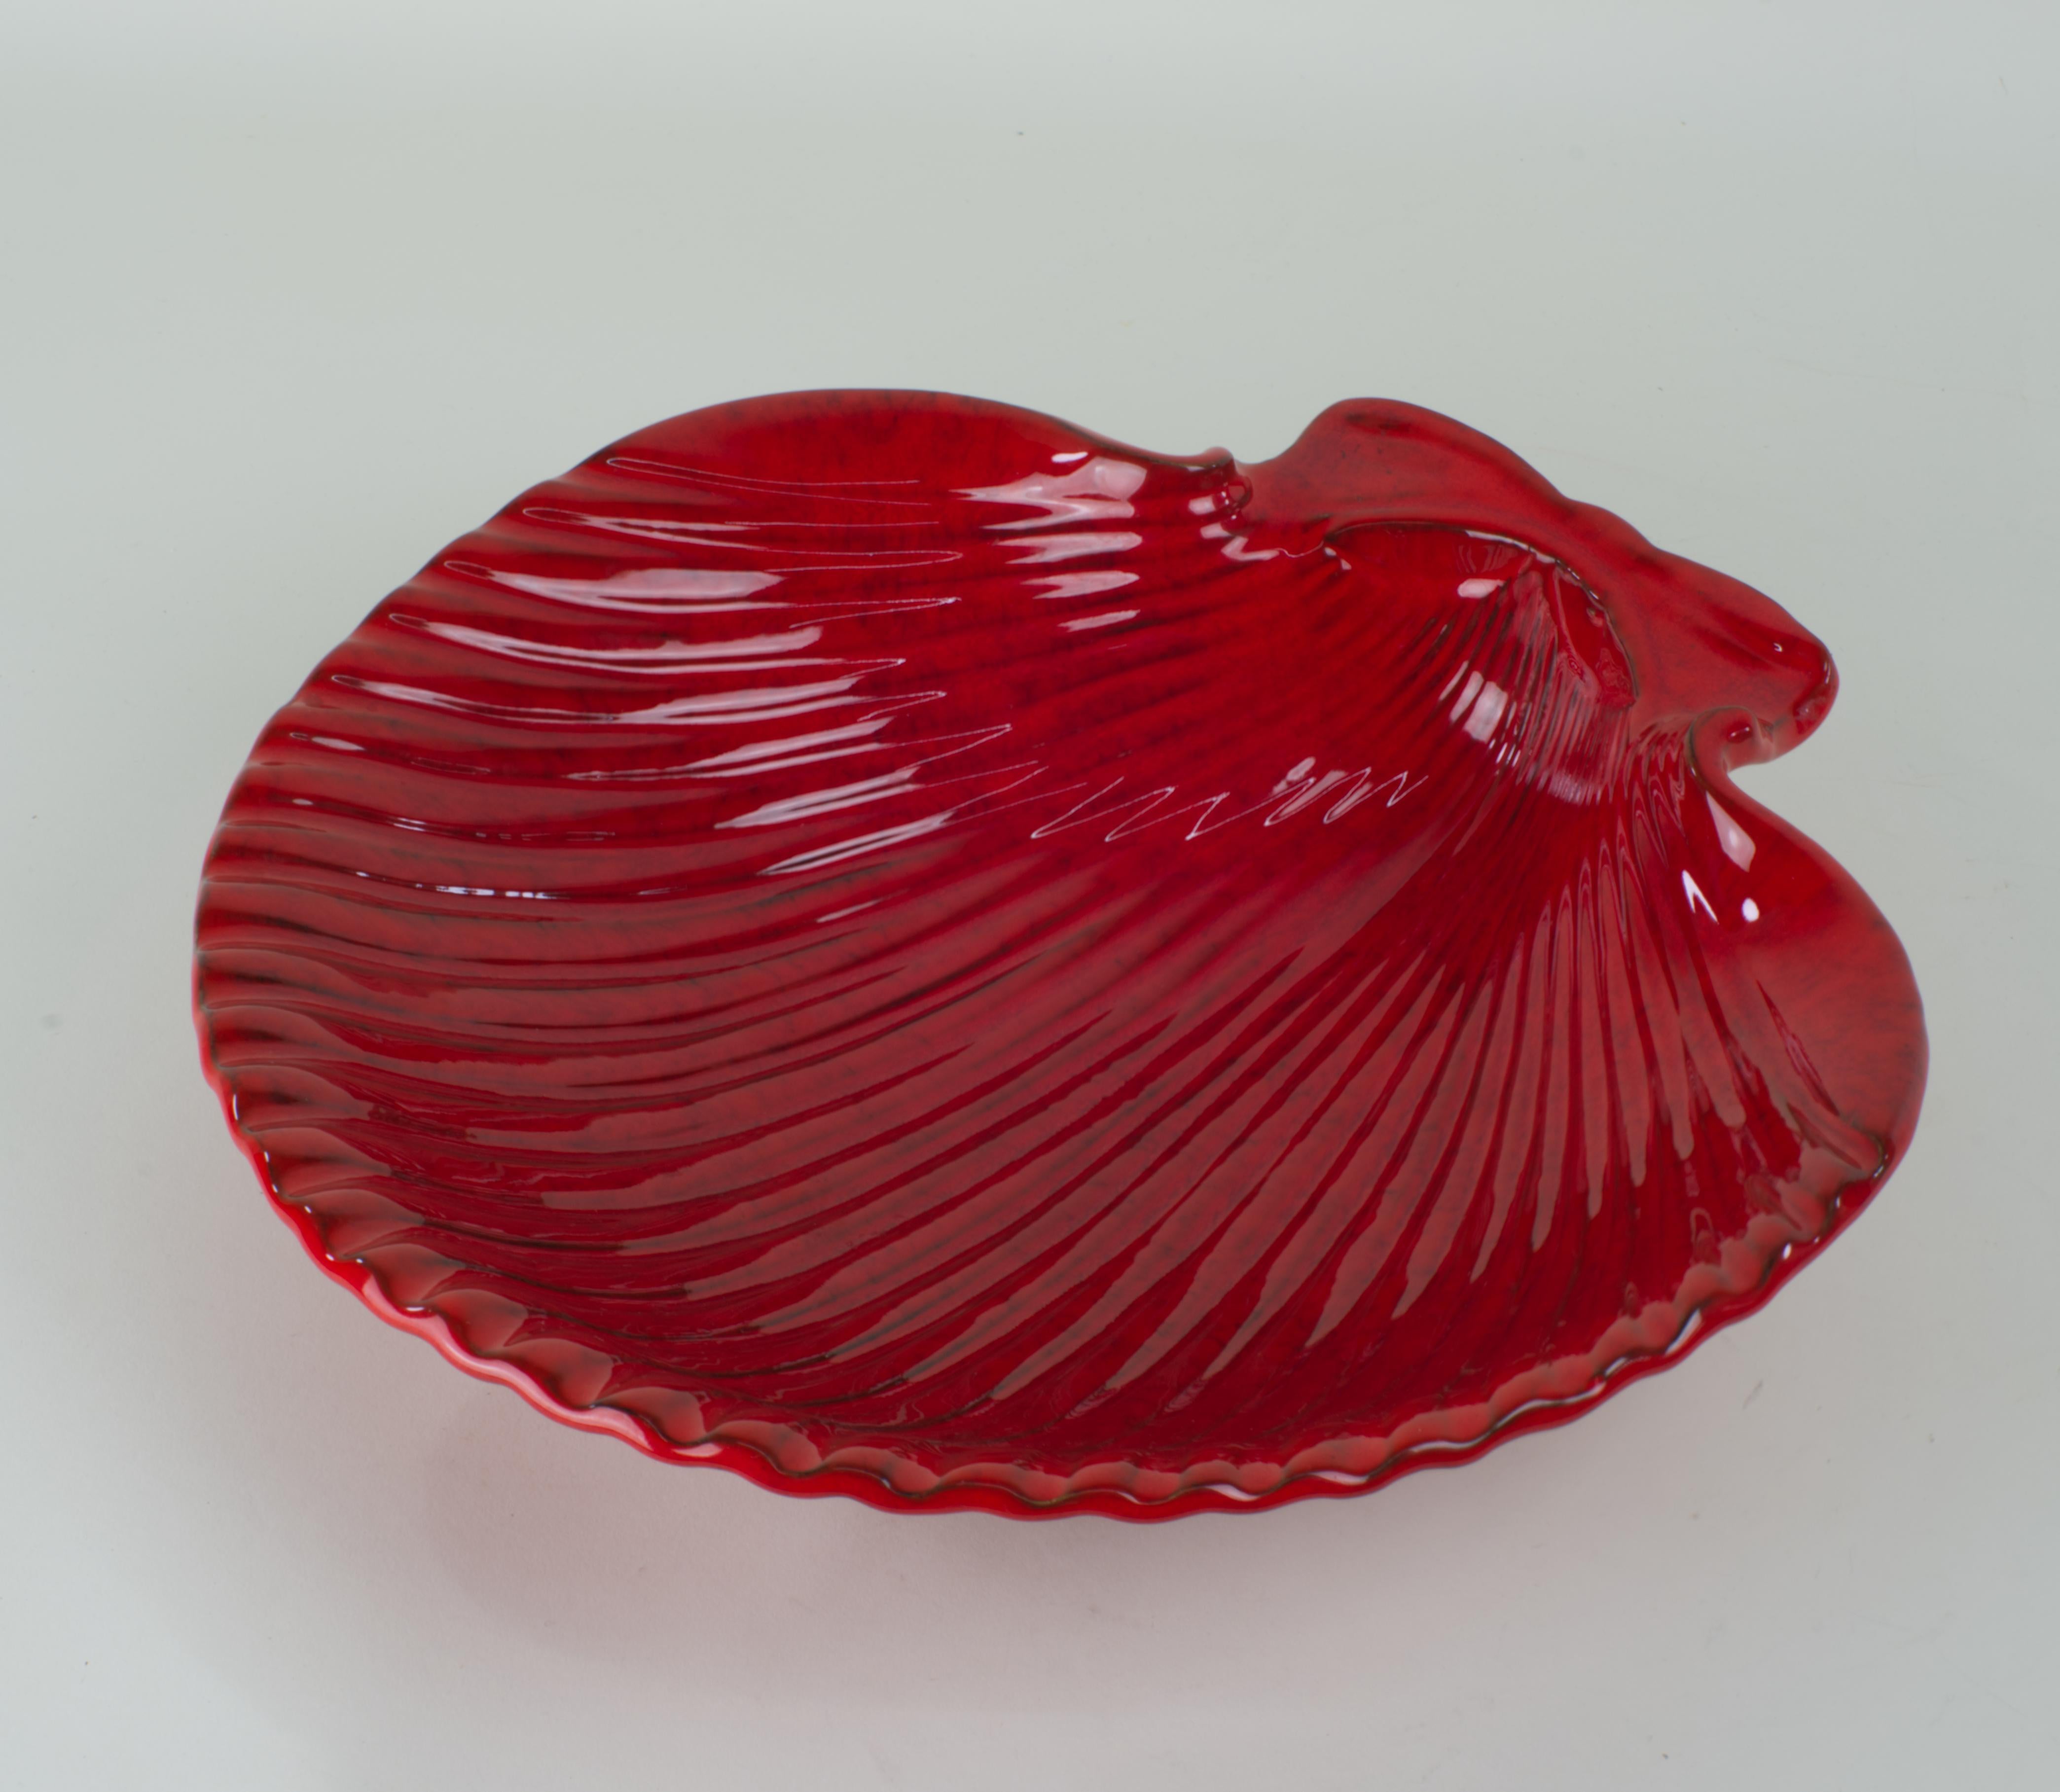 
Le bol en céramique en forme de coquillage est émaillé en rouge avec des variations complexes de la couleur de l'émail qui accentuent la forme complexe du bol. 

Le bol est signé sur le fond avec 